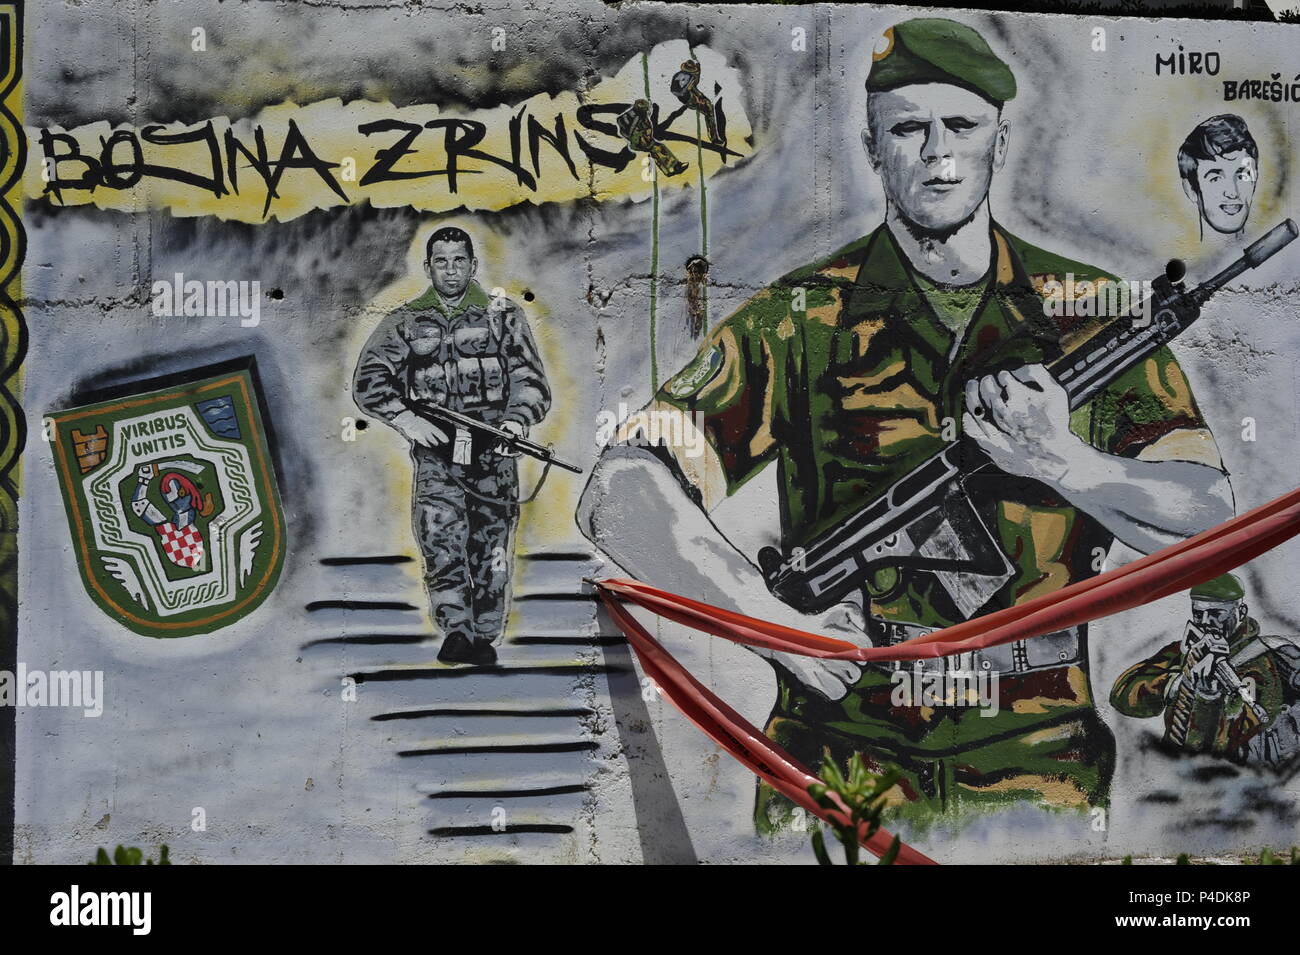 Graffitis to remember memorial of heroes of war civil-war in Yugoslavia  yougoslavia-war Vukovar street. Split, Croatia Stock Photo